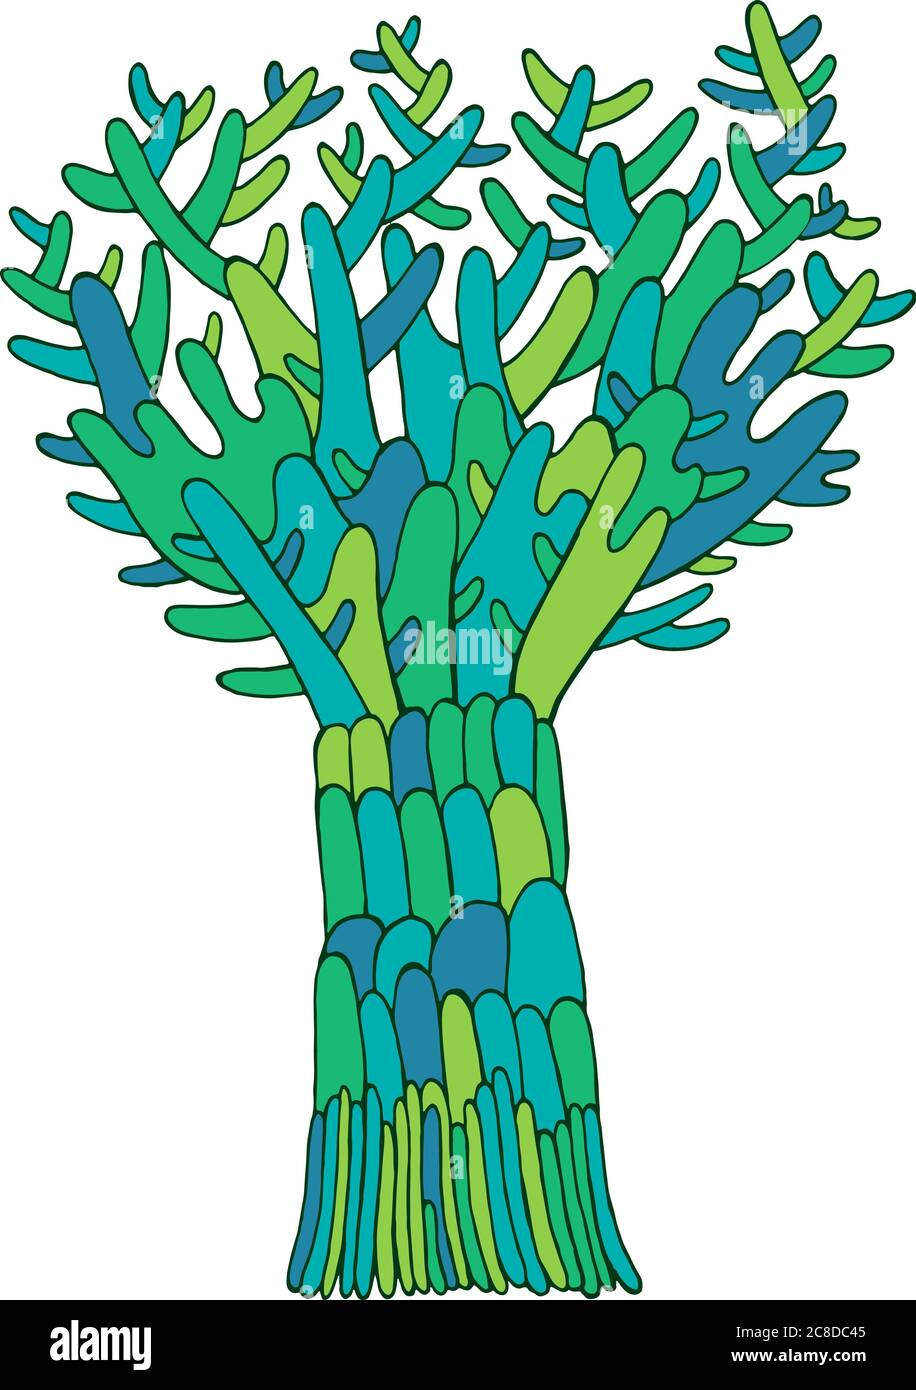 Cartoon Doodle Baum Illustration. Handgezeichnete bunte grüne Skizze. Isoliertes Element. Vektorgrafiken. Stock Vektor